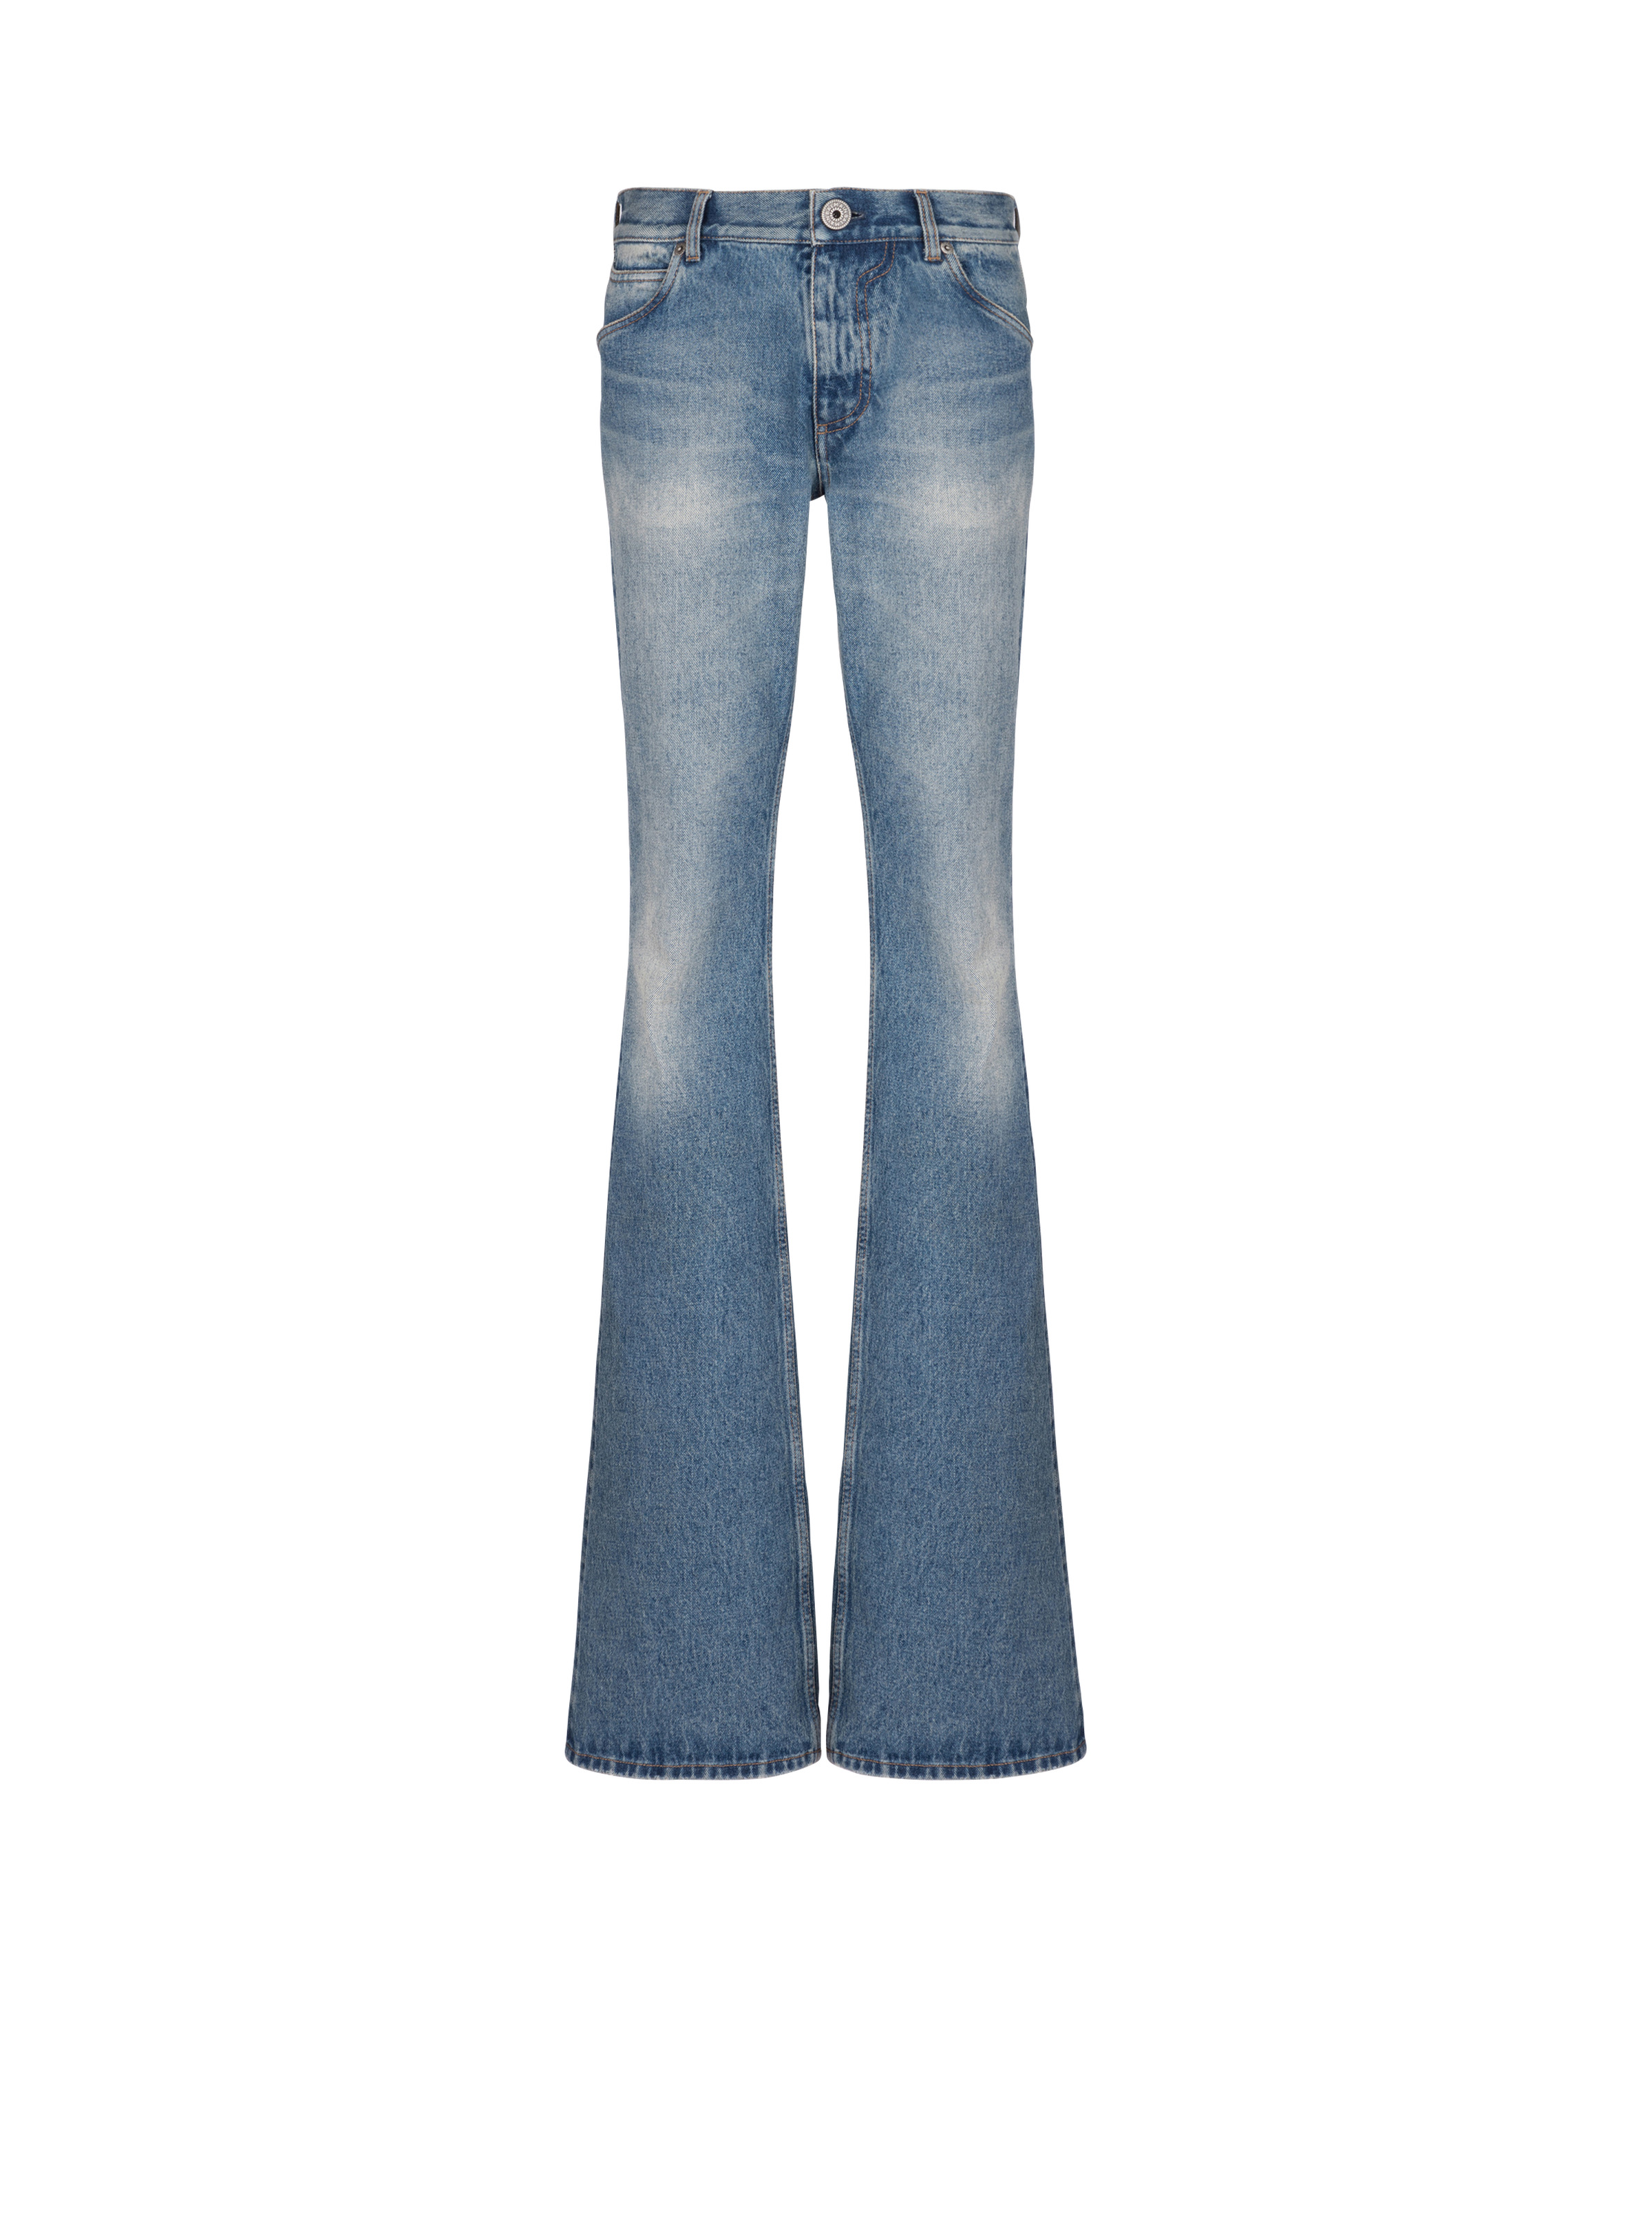 Blue Wash vintage denim jeans - 1